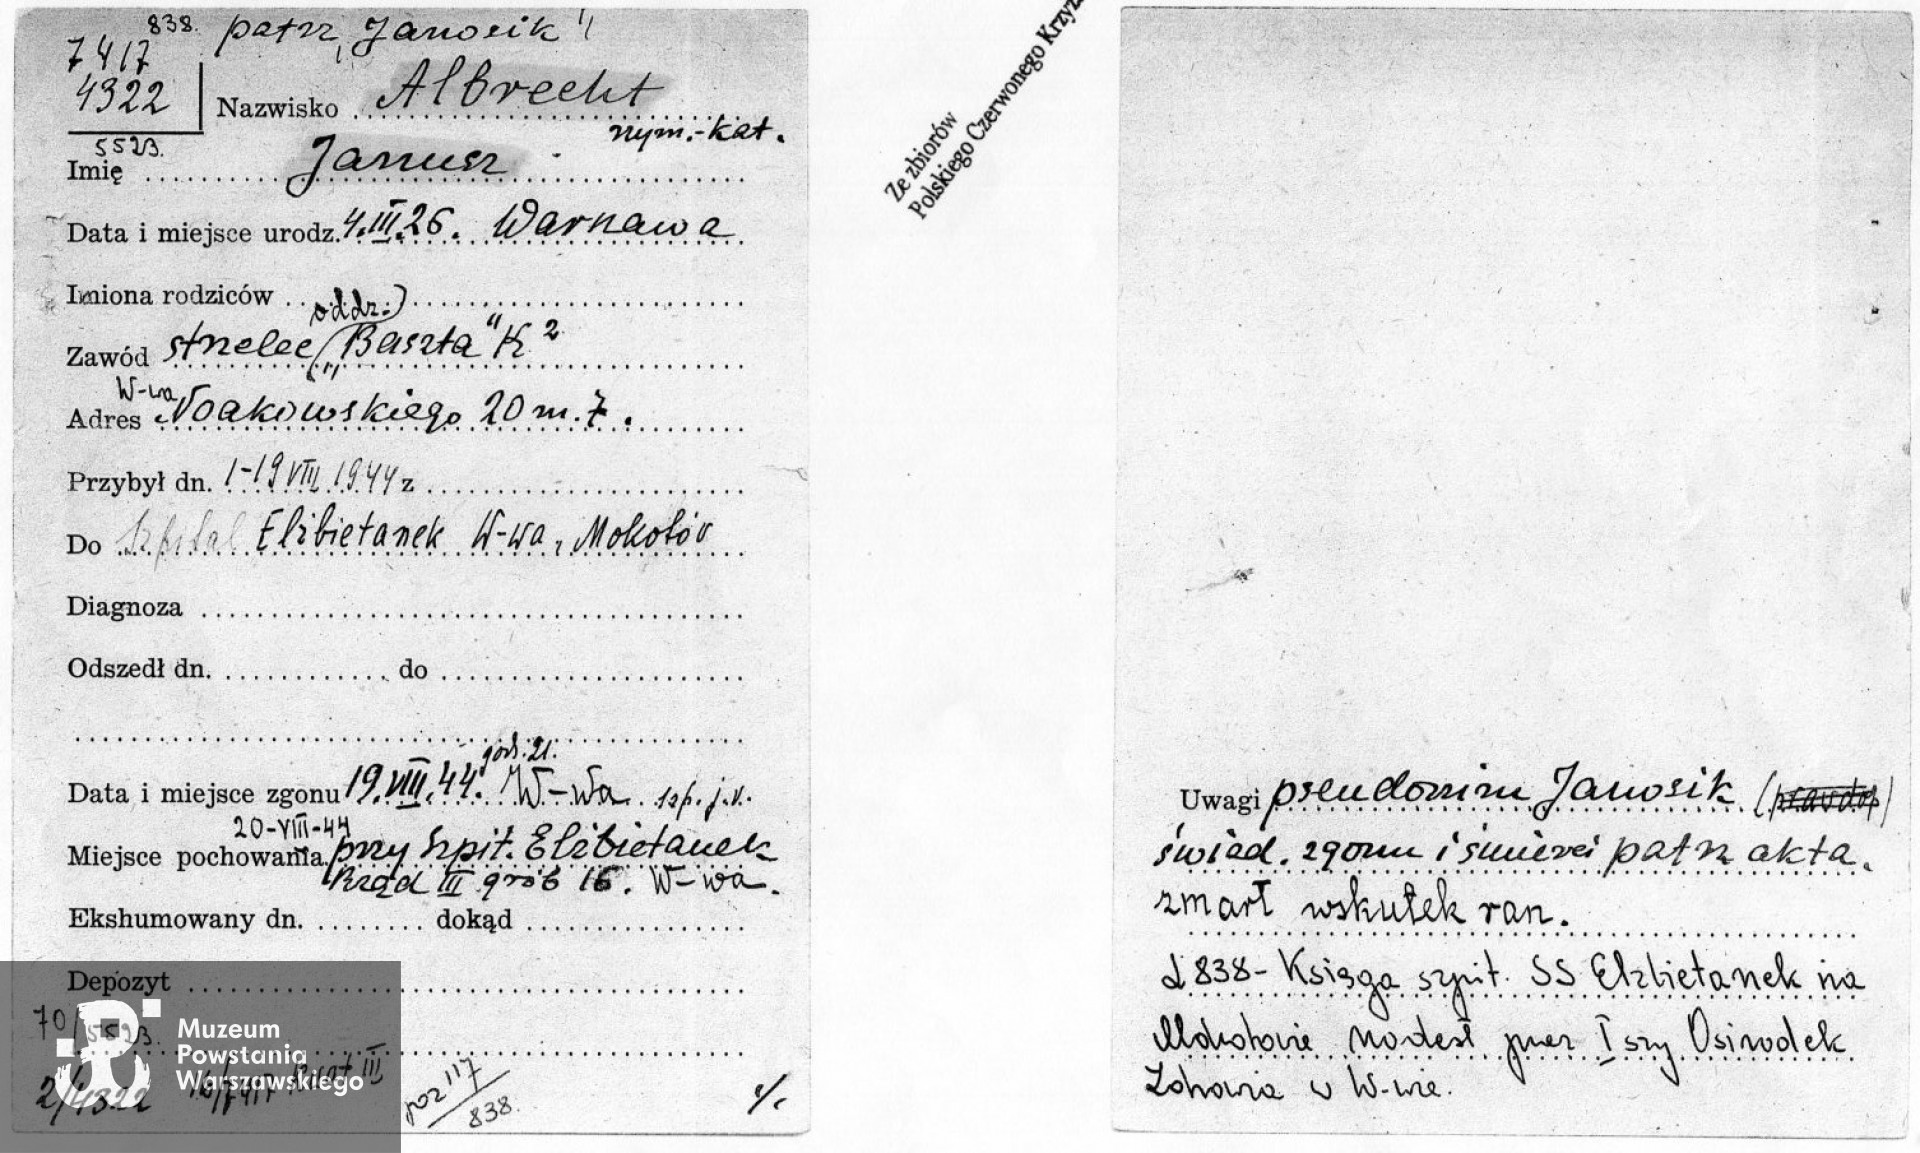 Polski Czerwony Krzyż - kartoteka ogólna, w karcie podana data śmierci - 19 sierpnia 1944. 